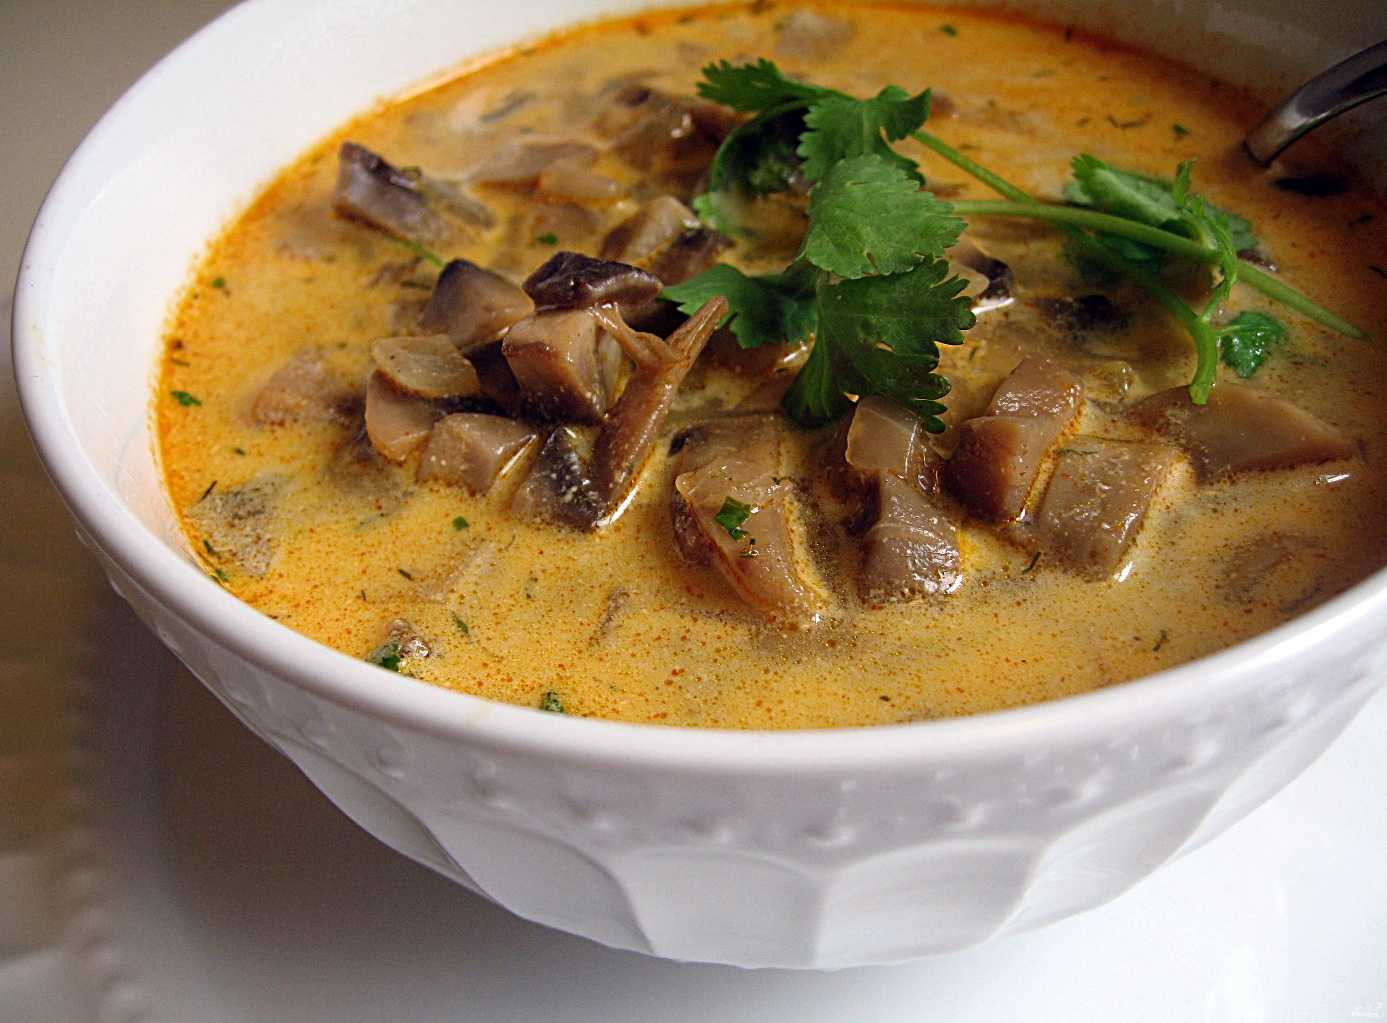 Супы с грибами и картошкой: рецепты, как приготовить простой грибной суп с картофелем